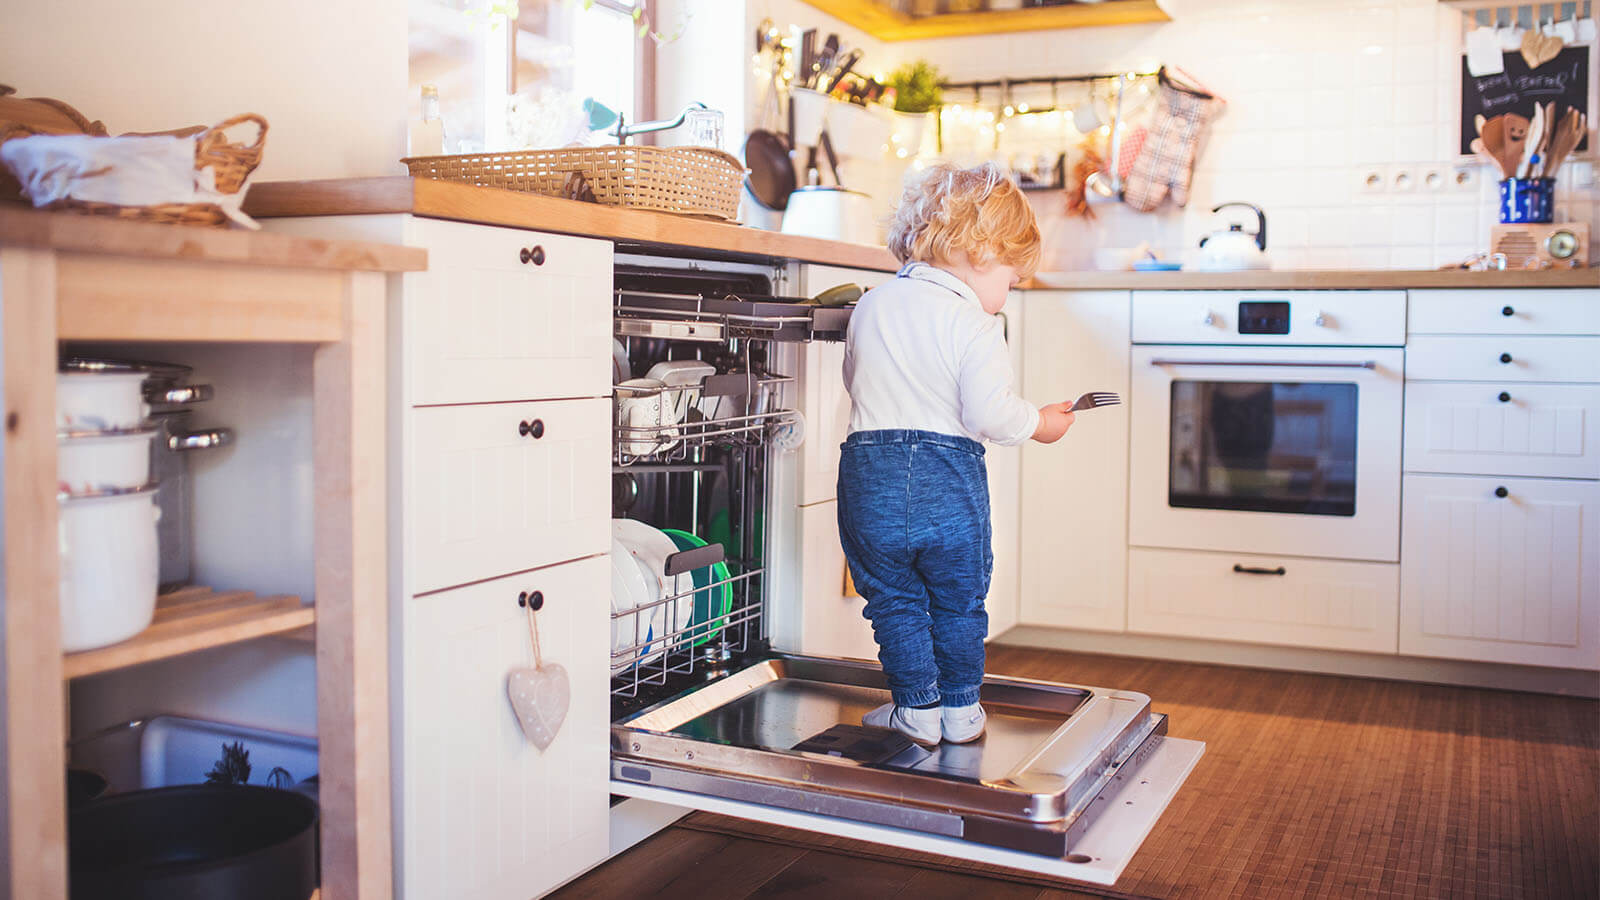 criança em posição de risco na cozinha, em cima da porta da máquina de lavar loiça